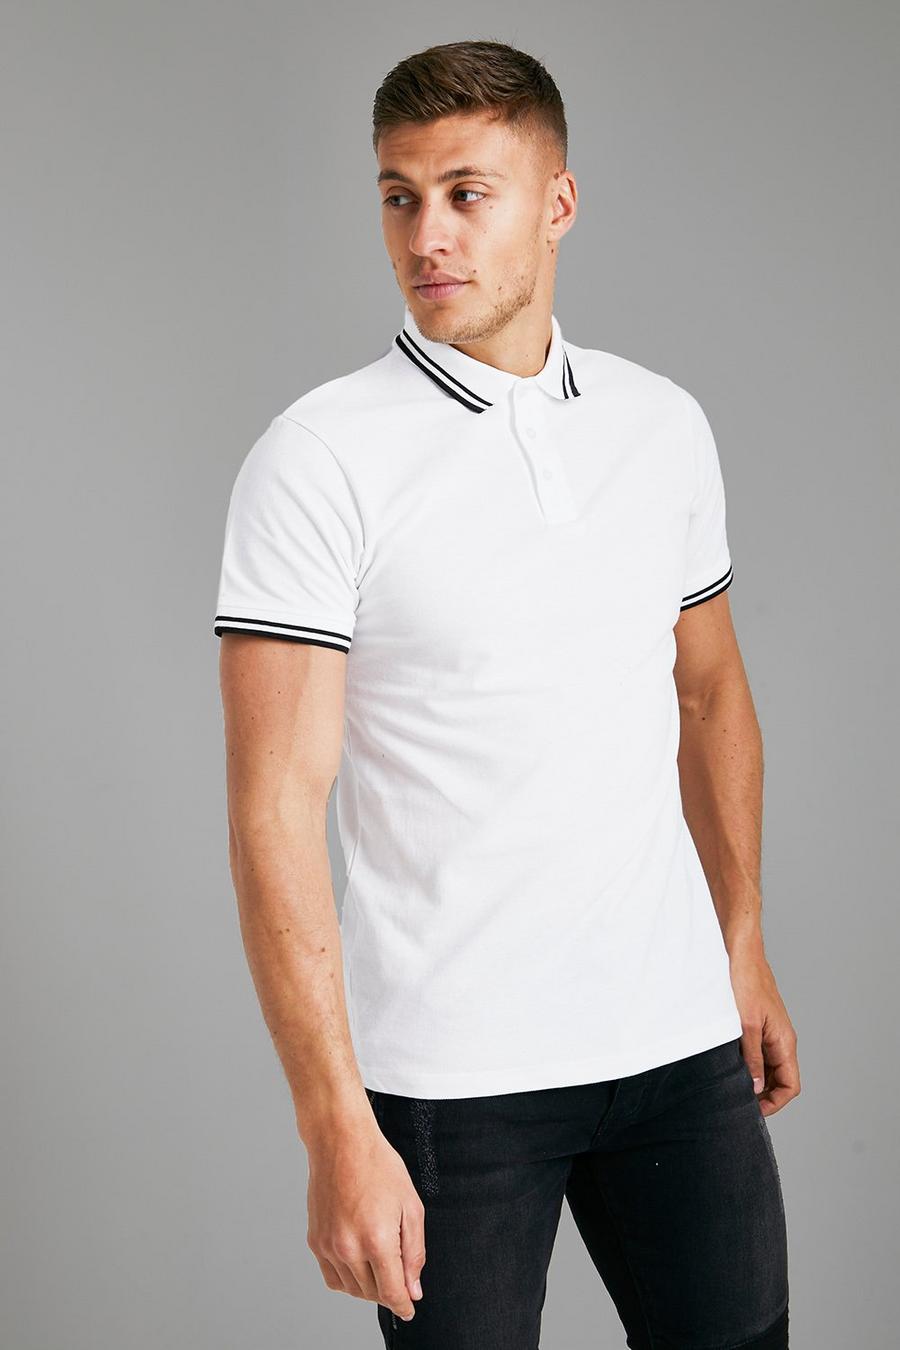 Kurzärmliges Slim-Fit Pique Poloshirt, White weiß